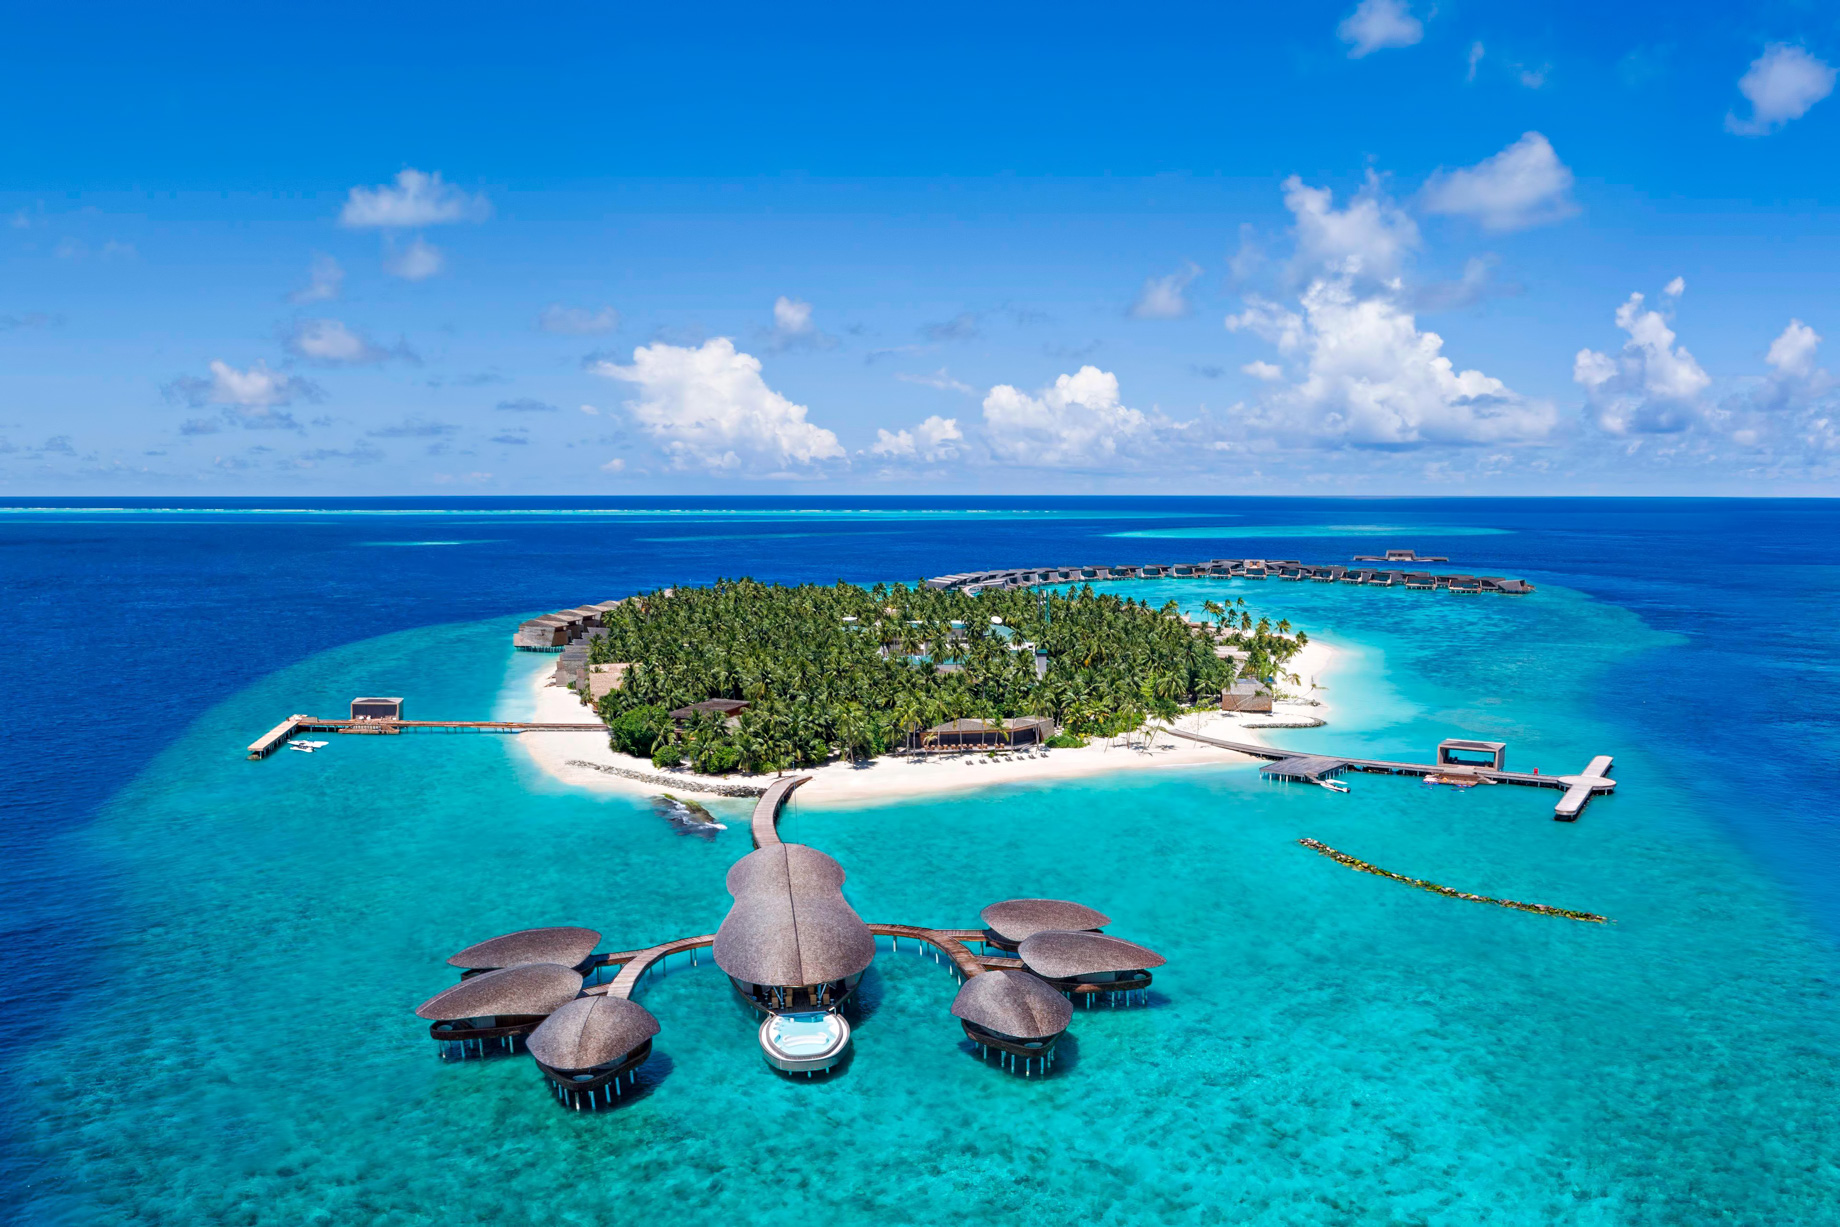 The St. Regis Maldives Vommuli Resort – Dhaalu Atoll, Maldives – Aerial Vommuli Island